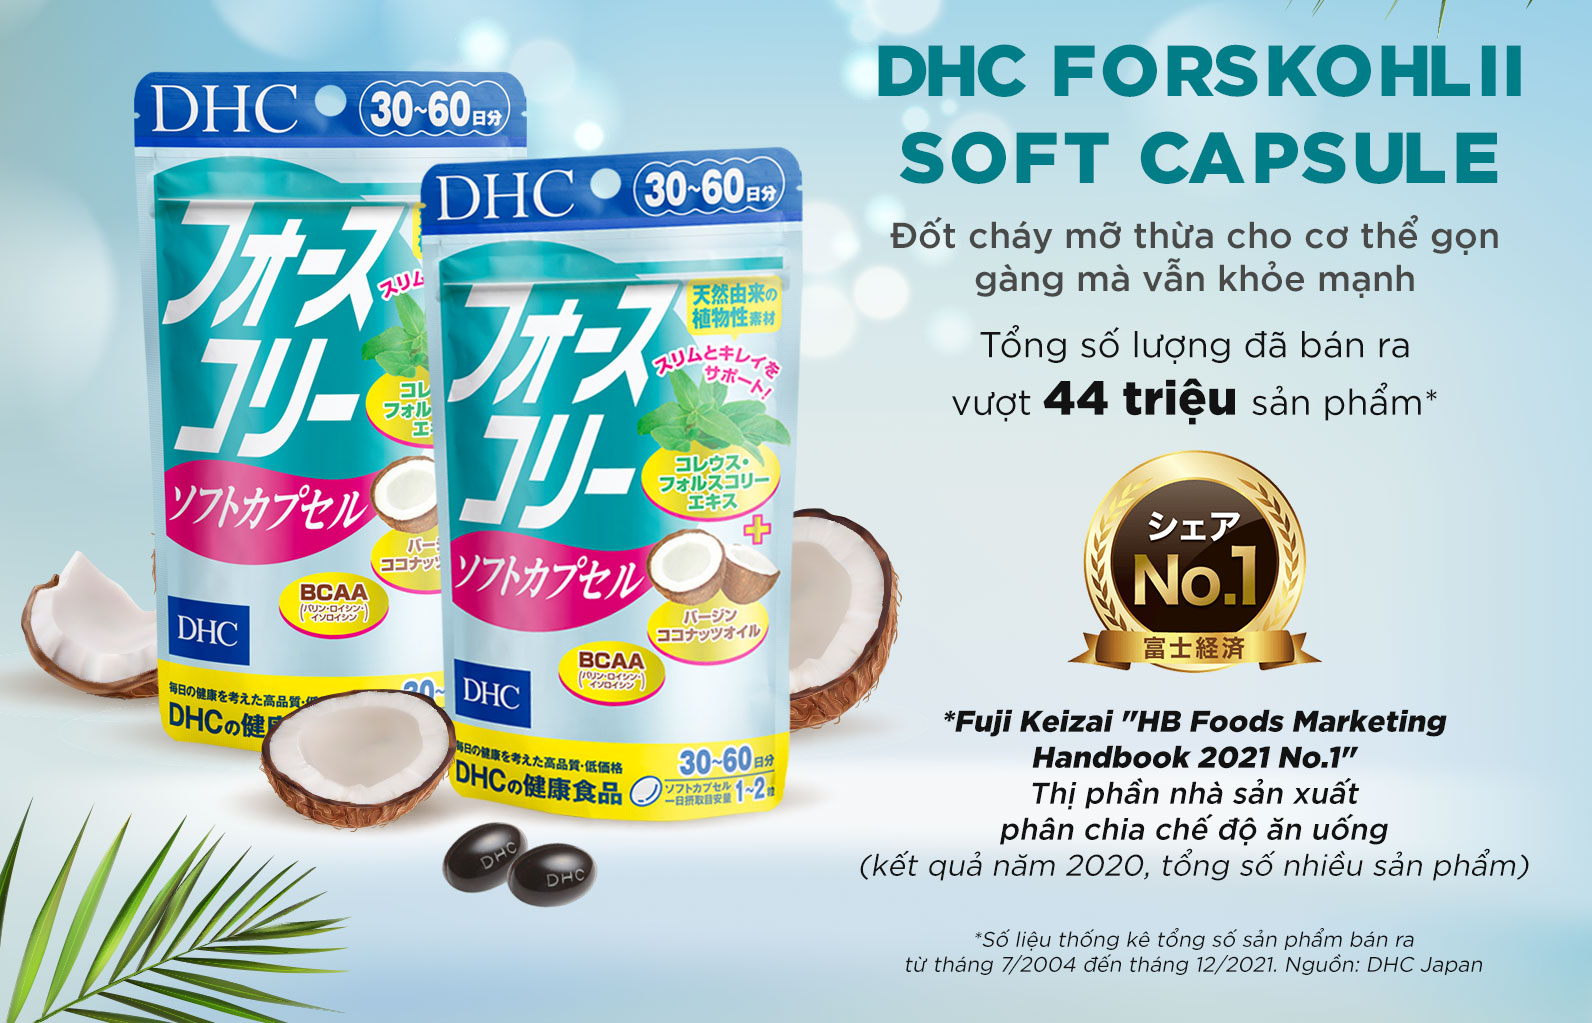 Viên uống DHC Forskohlii Soft Capsule giúp hỗ trợ ăn kiêng và làm đẹp